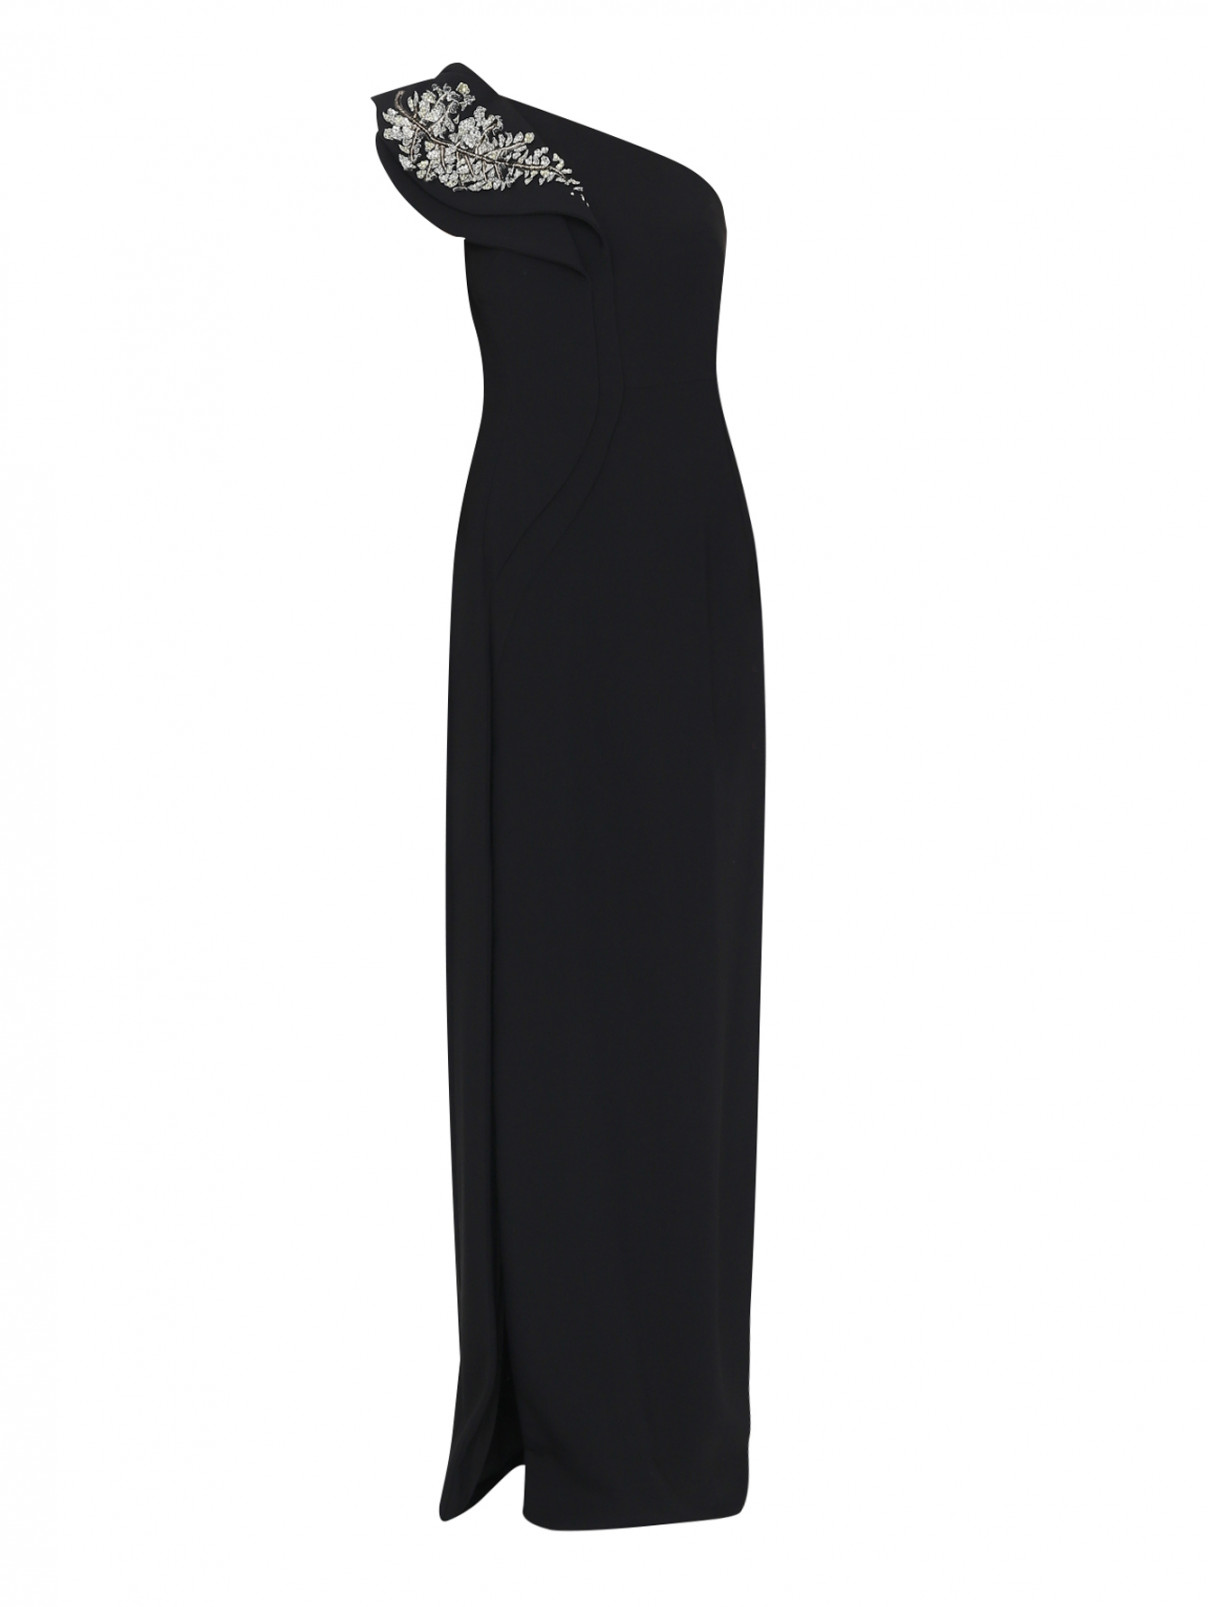 Платье из вискозы с вышивкой пайетками Antonio Berardi  –  Общий вид  – Цвет:  Черный